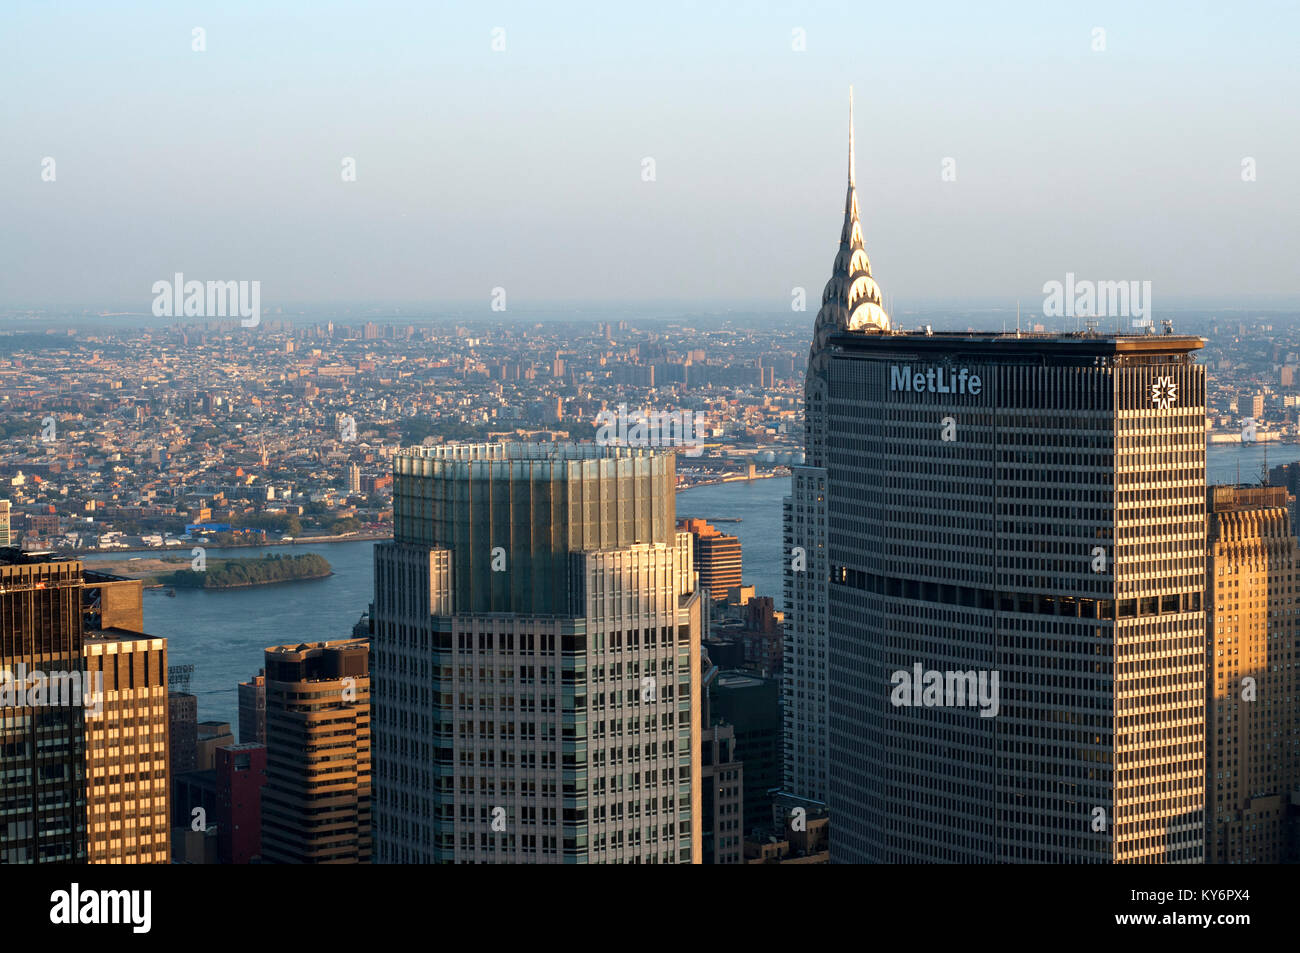 Vedute del centro cittadino inferiore con Metlife building in primo piano e dietro il Chrysler Building. Foto Stock